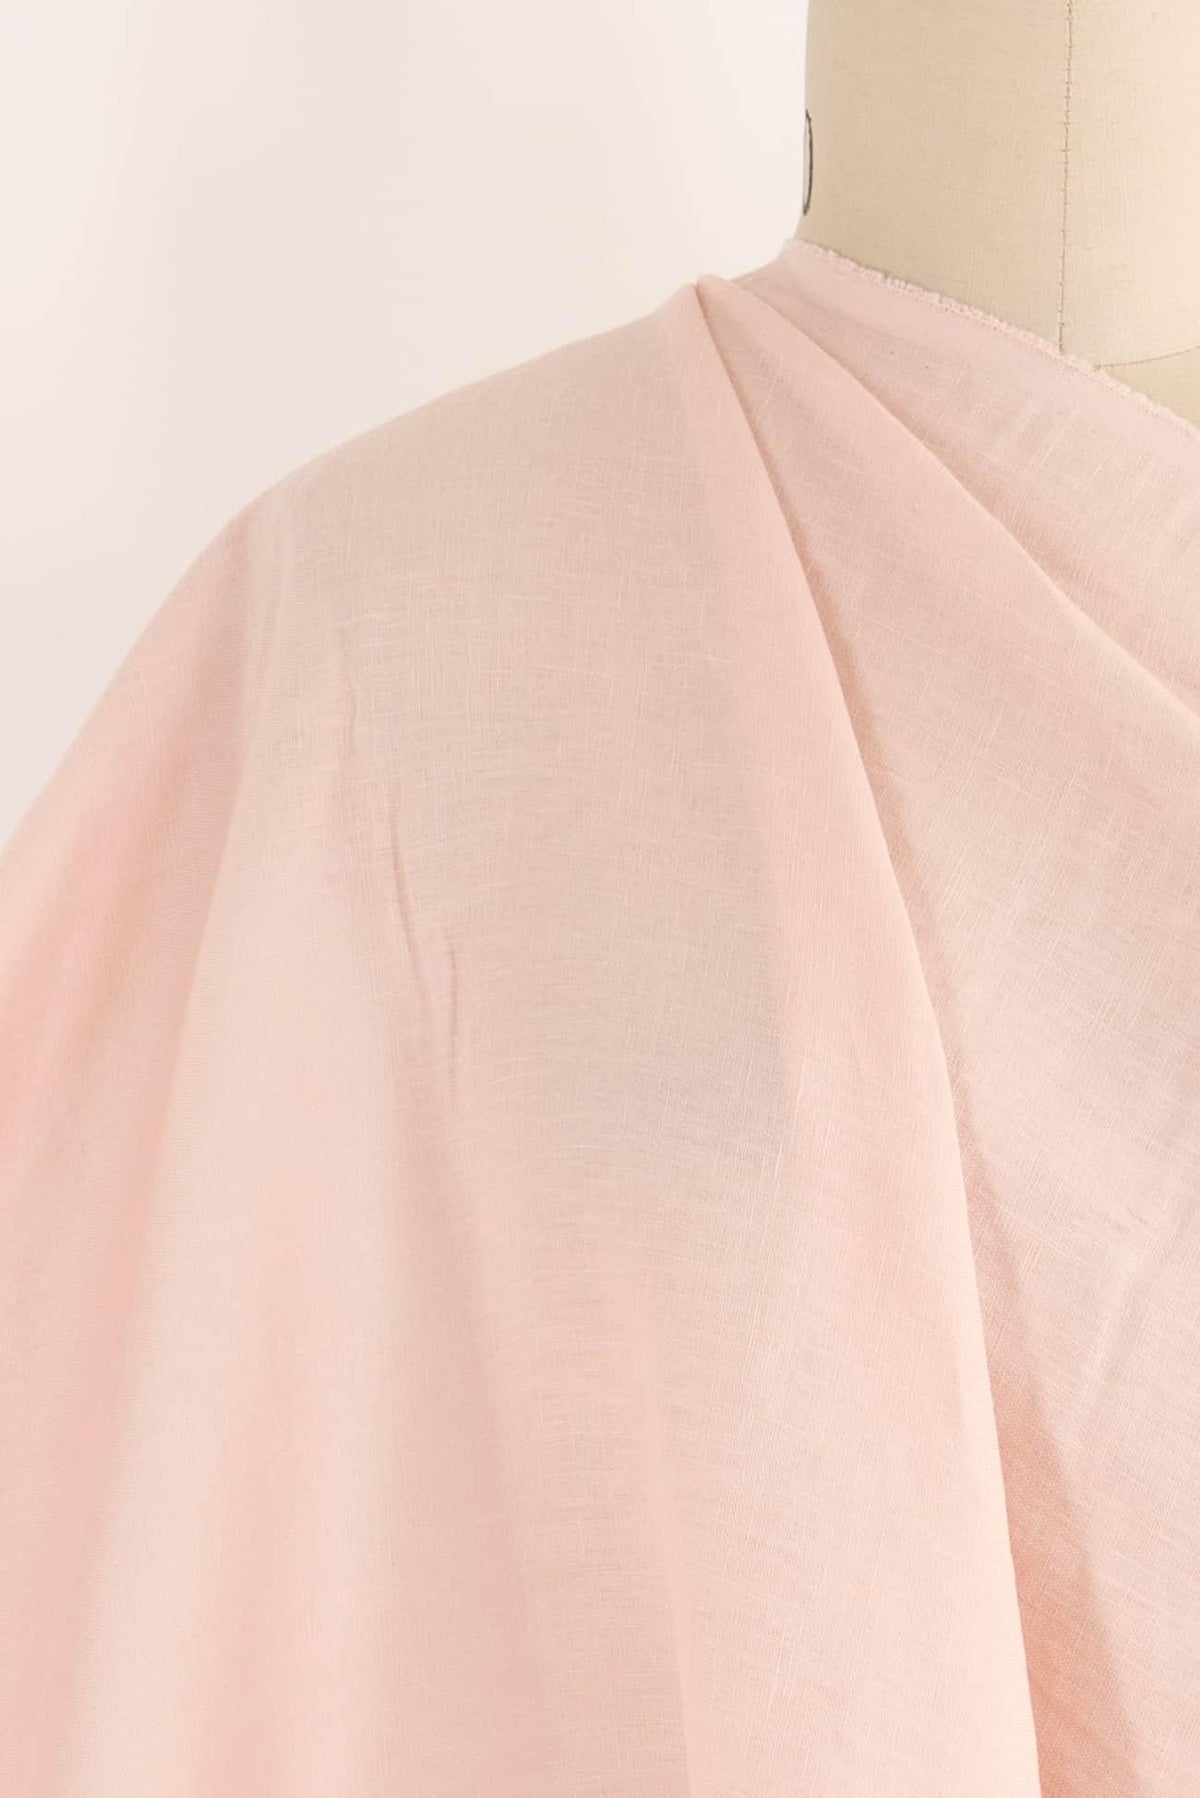 Misty Rose Linen Woven - Marcy Tilton Fabrics